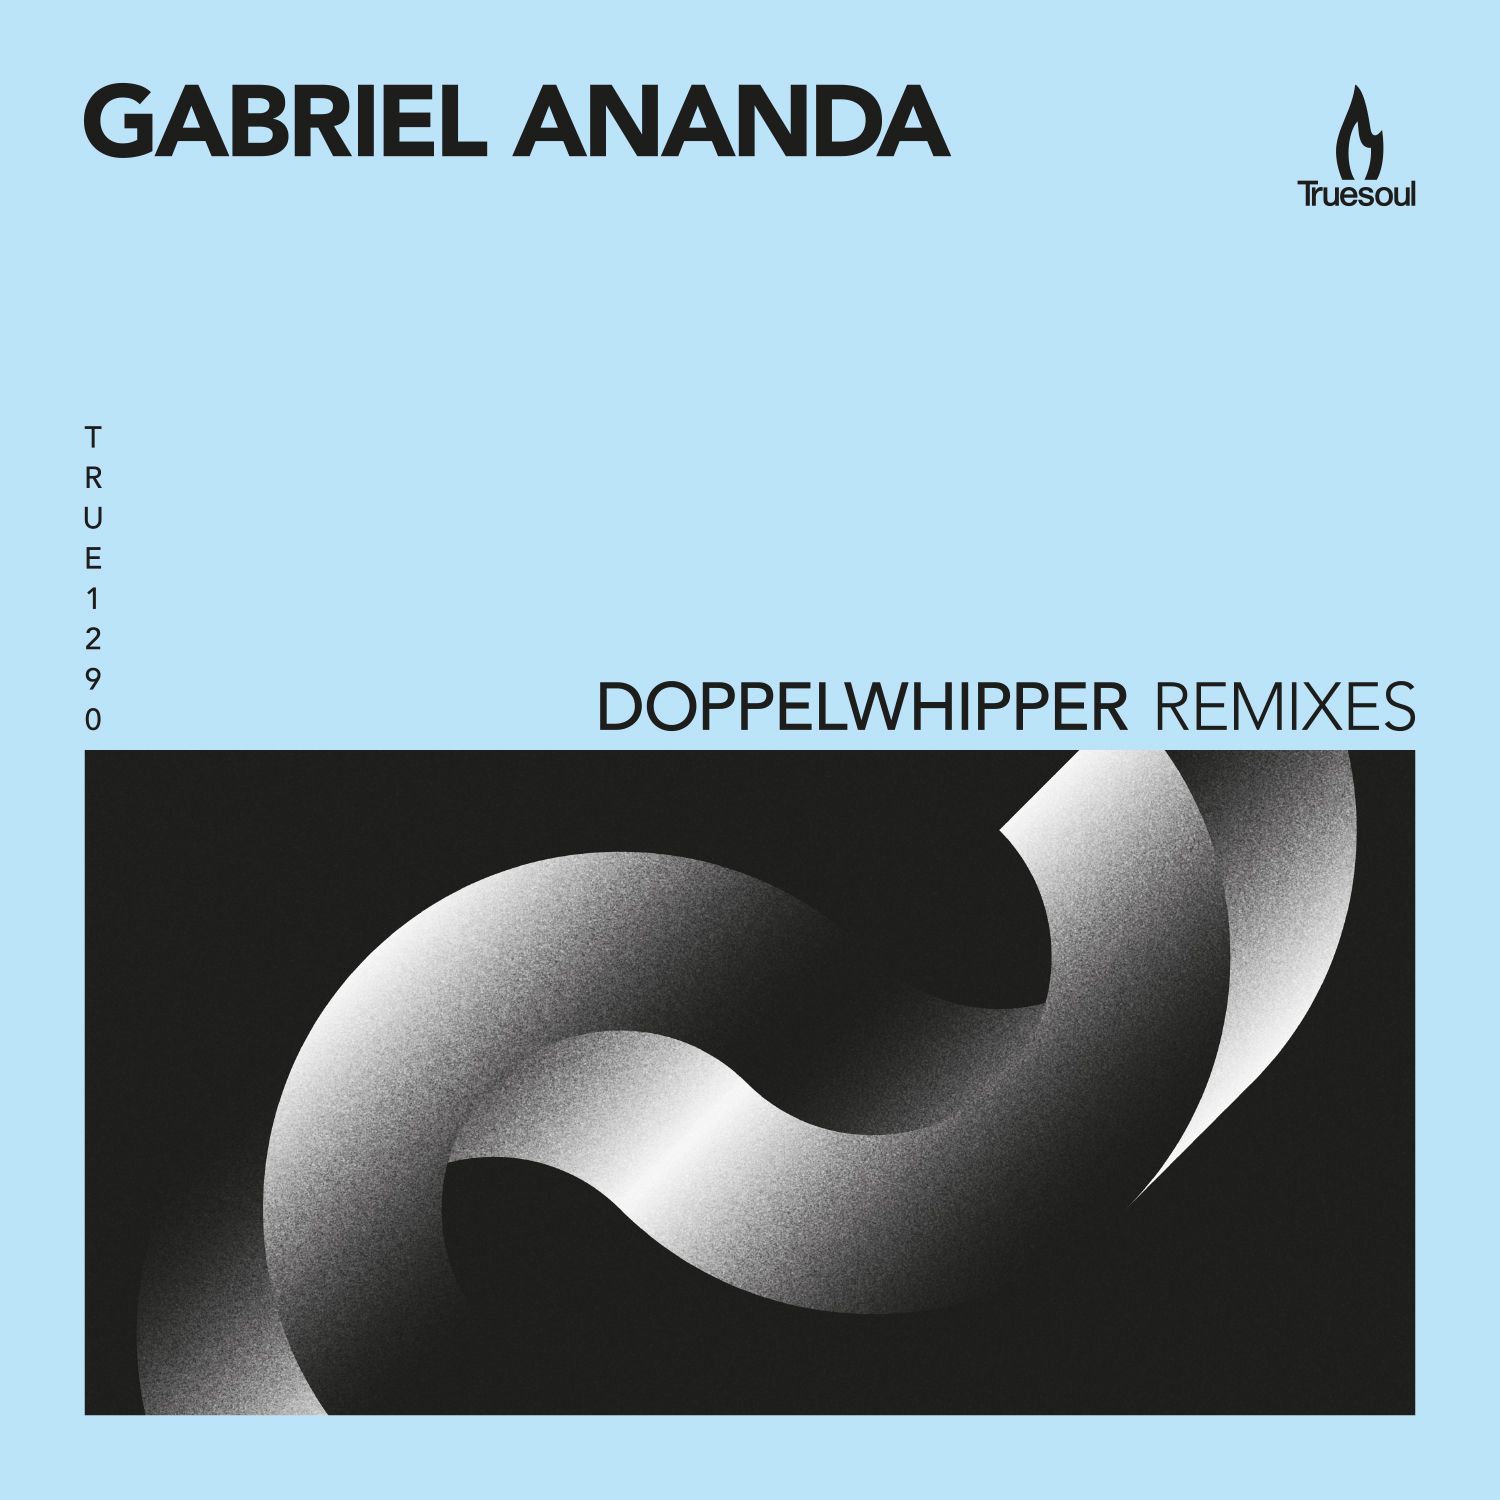 Aflaai Gabriel Ananda - Doppelwhipper (Marco Faraone Remix) - Truesoul - TRUE1290